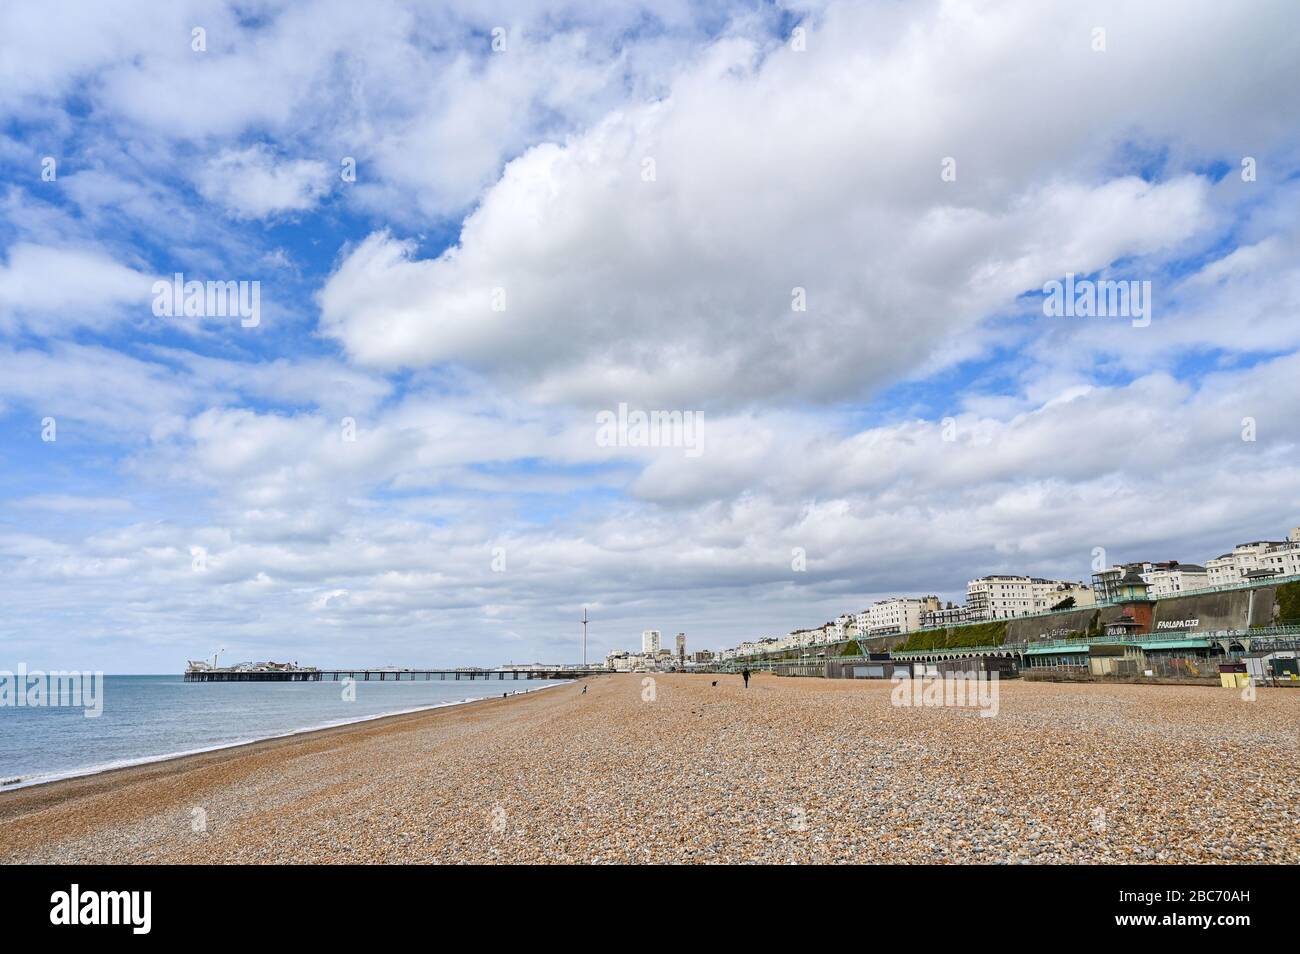 Brighton UK 3. April 2020 - der Strand von Brighton sieht am 11. Tag ruhig aus. Die Regierungen sperren sich in Großbritannien während der Coronavirus COVID-19-Pandemie-Krise. Es wird erwartet, dass sich das Wetter über das Wochenende aufwärmen wird und die Temperaturen am Sonntag voraussichtlich zwanzig Grad erreichen werden. Kredit: Simon Dack / Alamy Live News Stockfoto